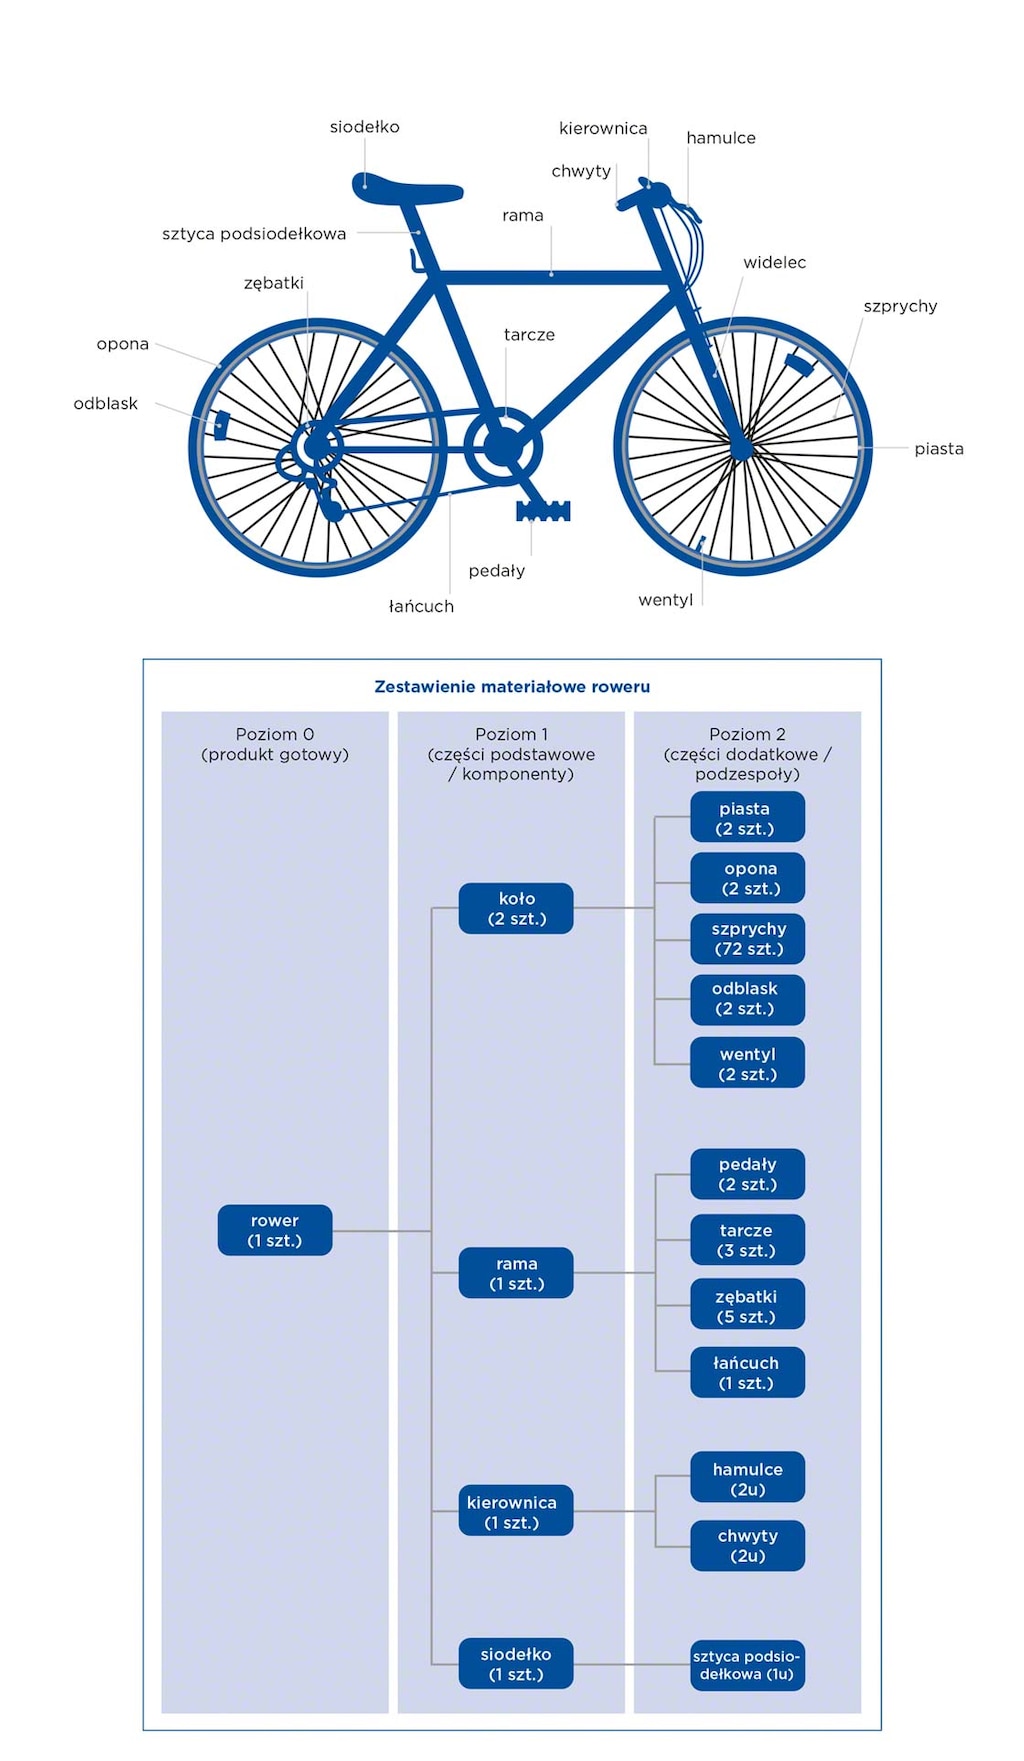 Przykład hierarchicznego układu zestawienia materiałowego (BOM) na podstawie wykazu części składowych roweru